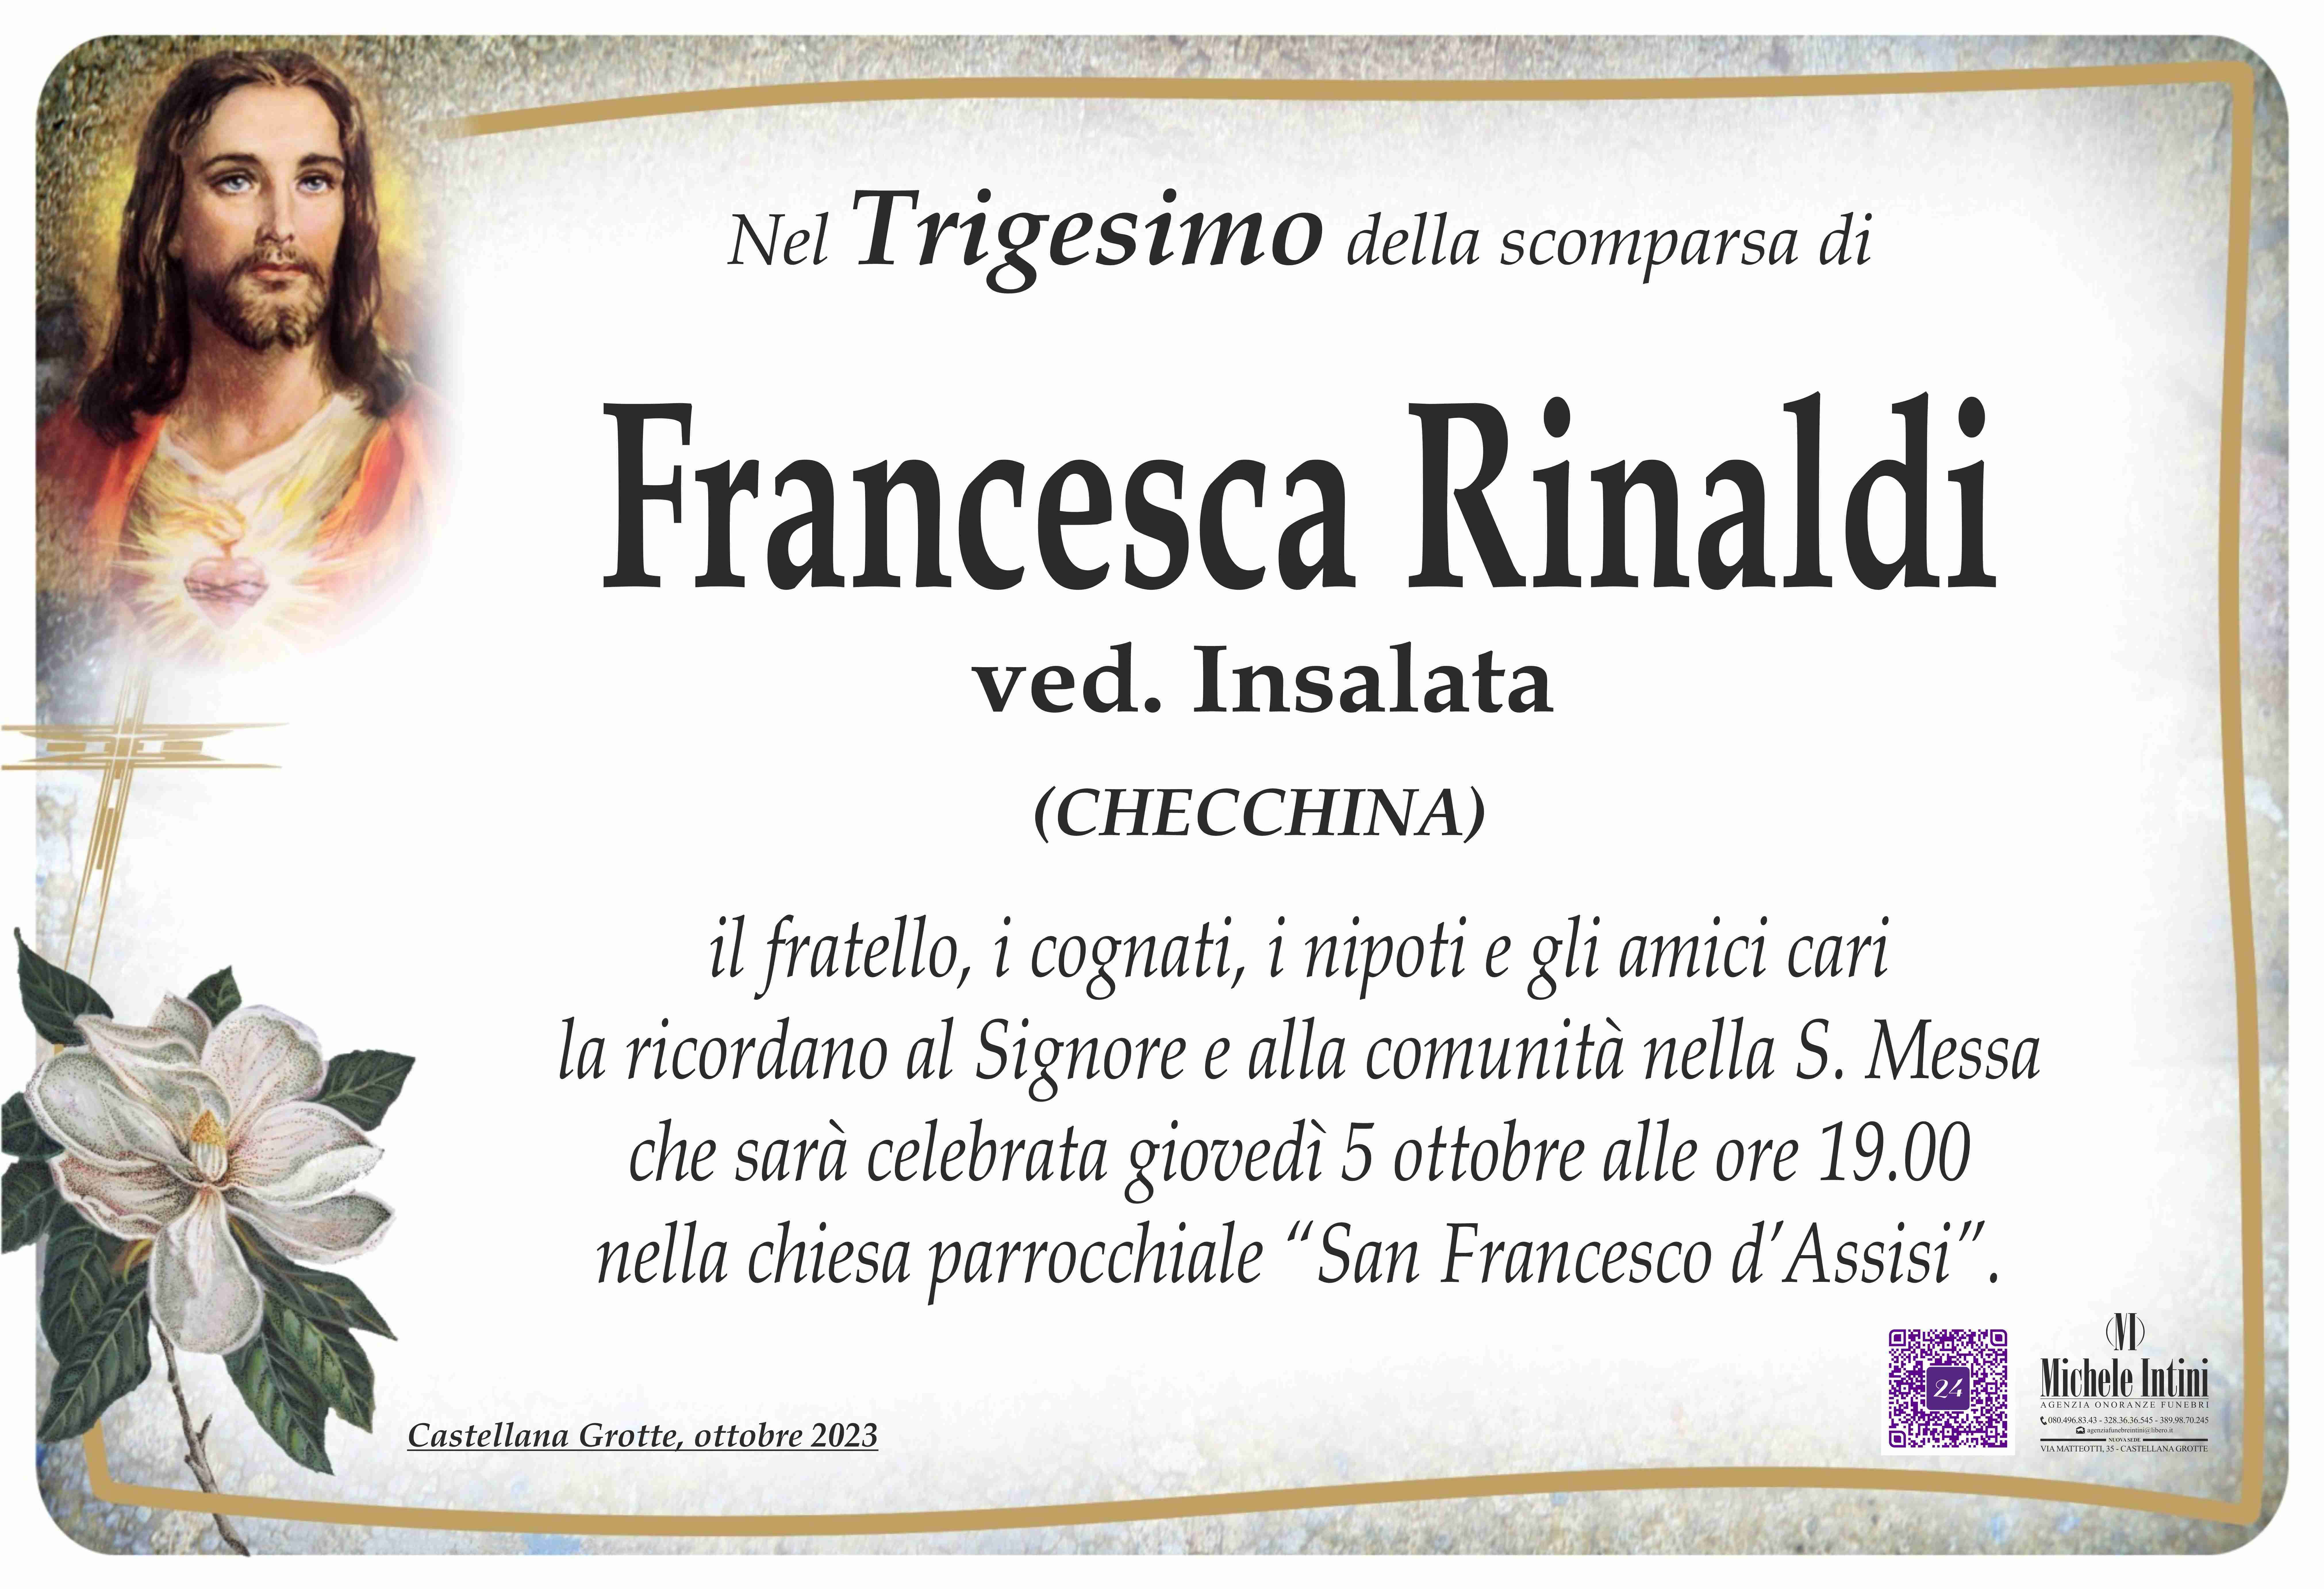 Francesca Rinaldi